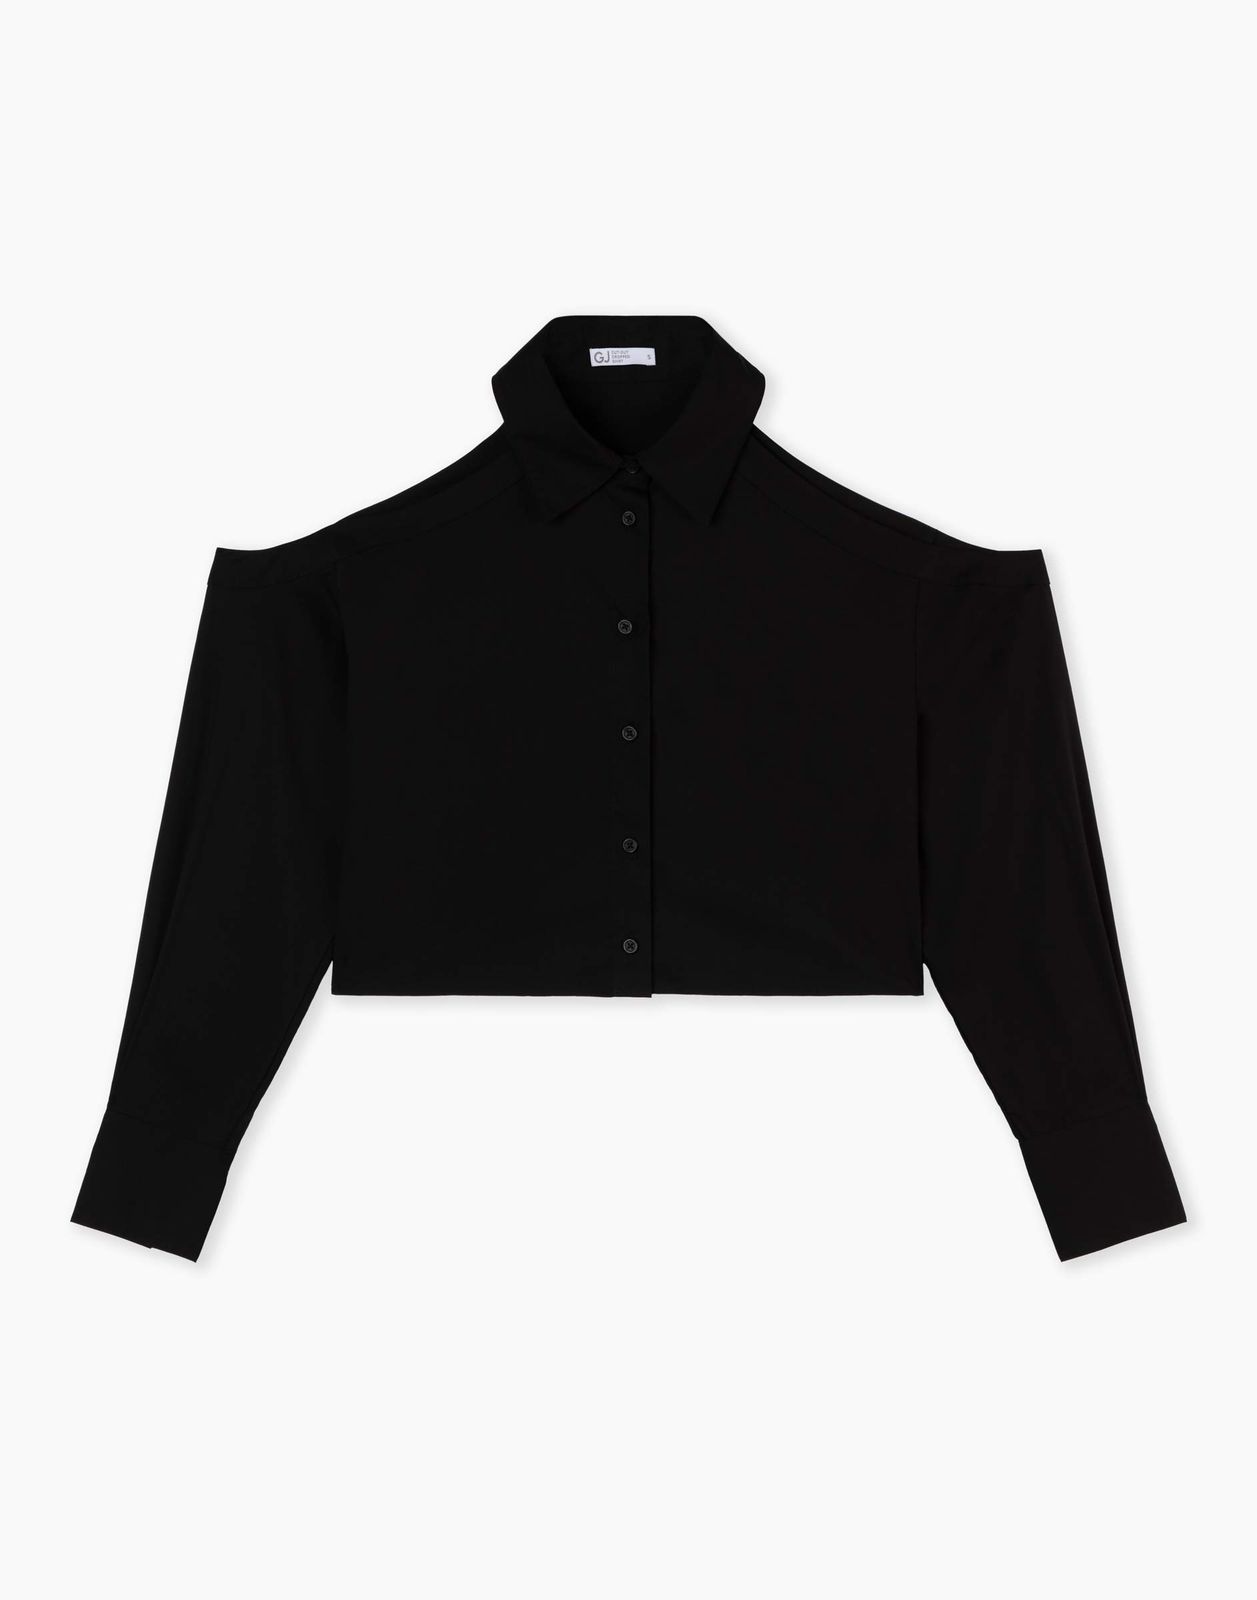 Рубашка женская Gloria Jeans GWT003865 черный L/170